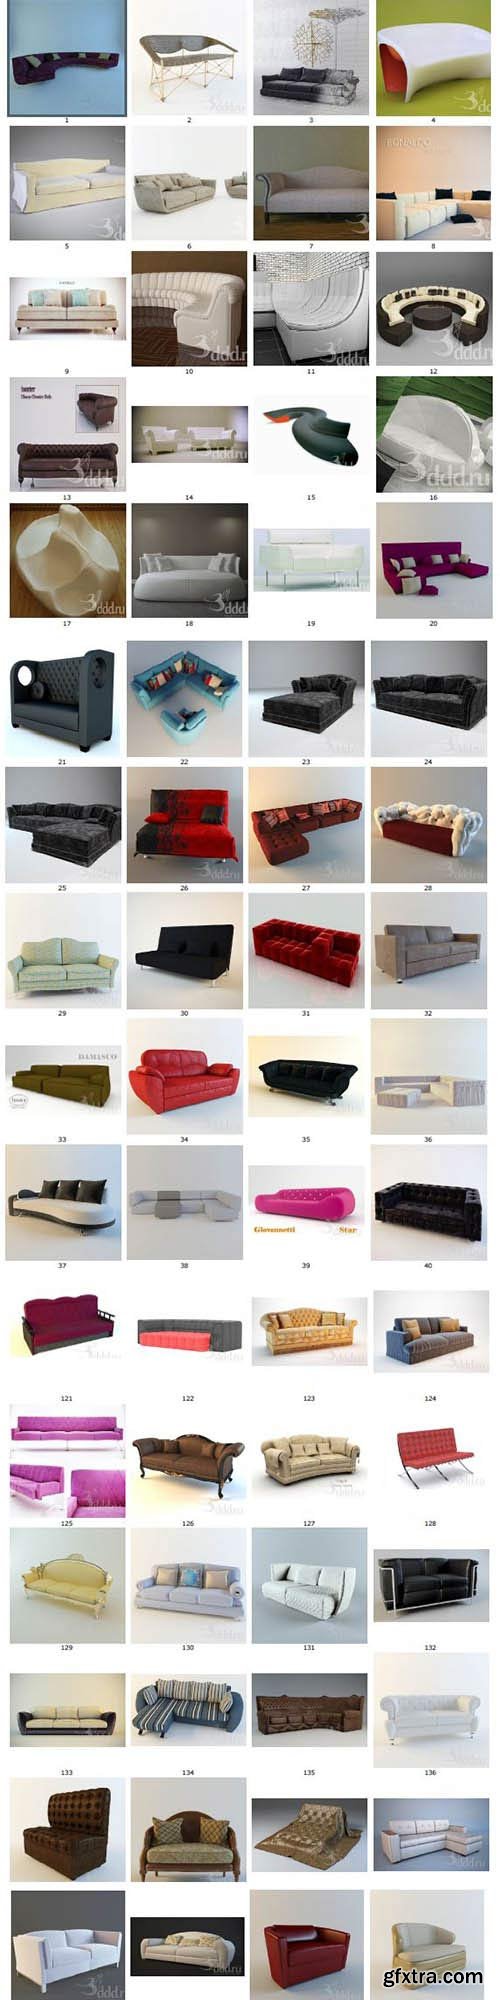 3DDD - Sofa 3D models